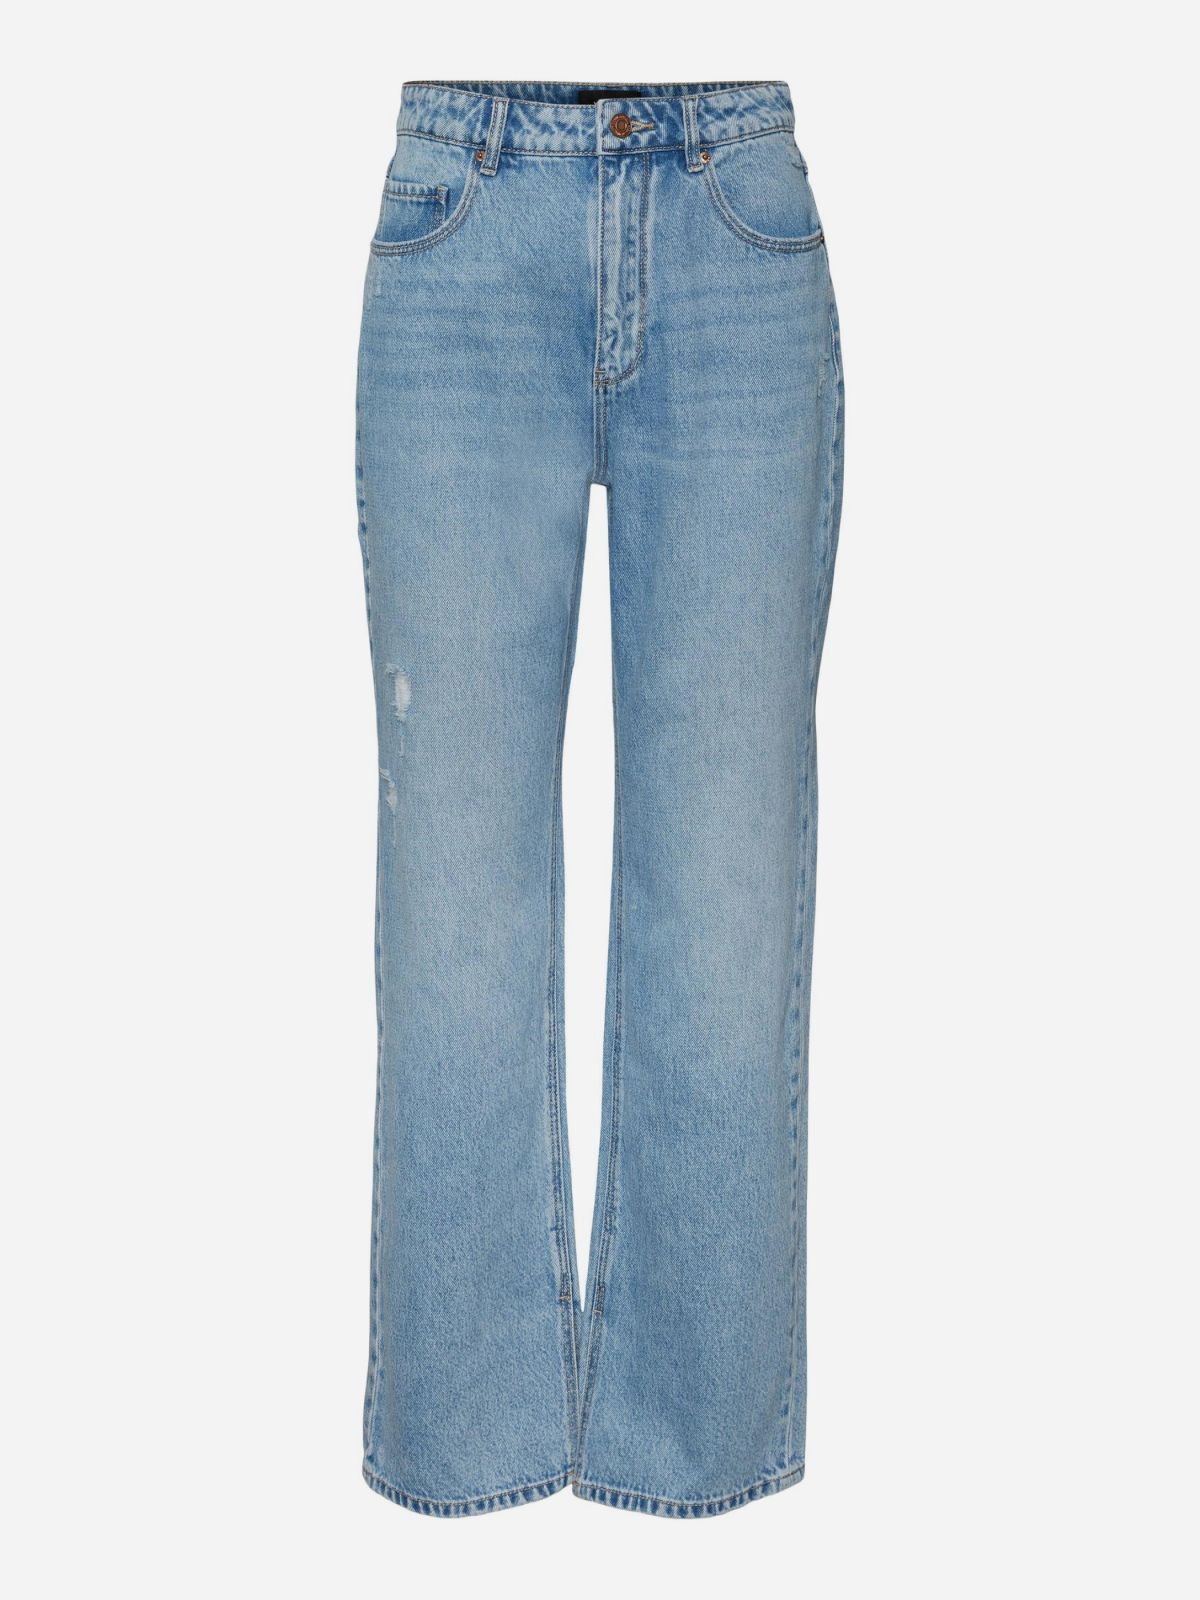  ג'ינס בגזרה גבוהה / נשים של VERO MODA